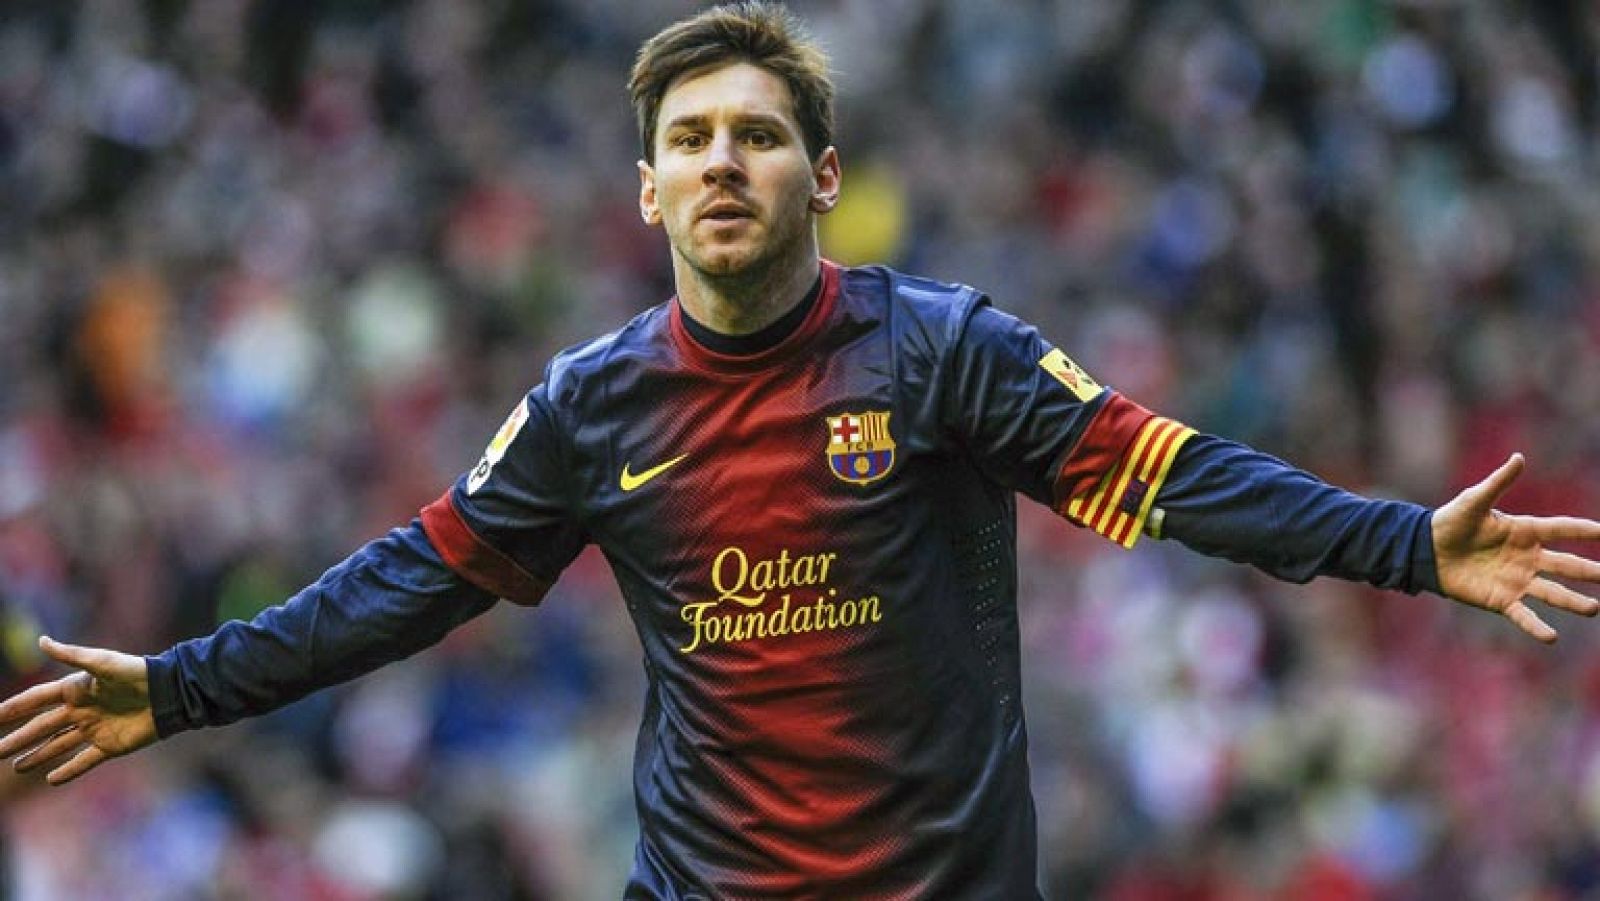 La vuelta de Messi anima al Barça